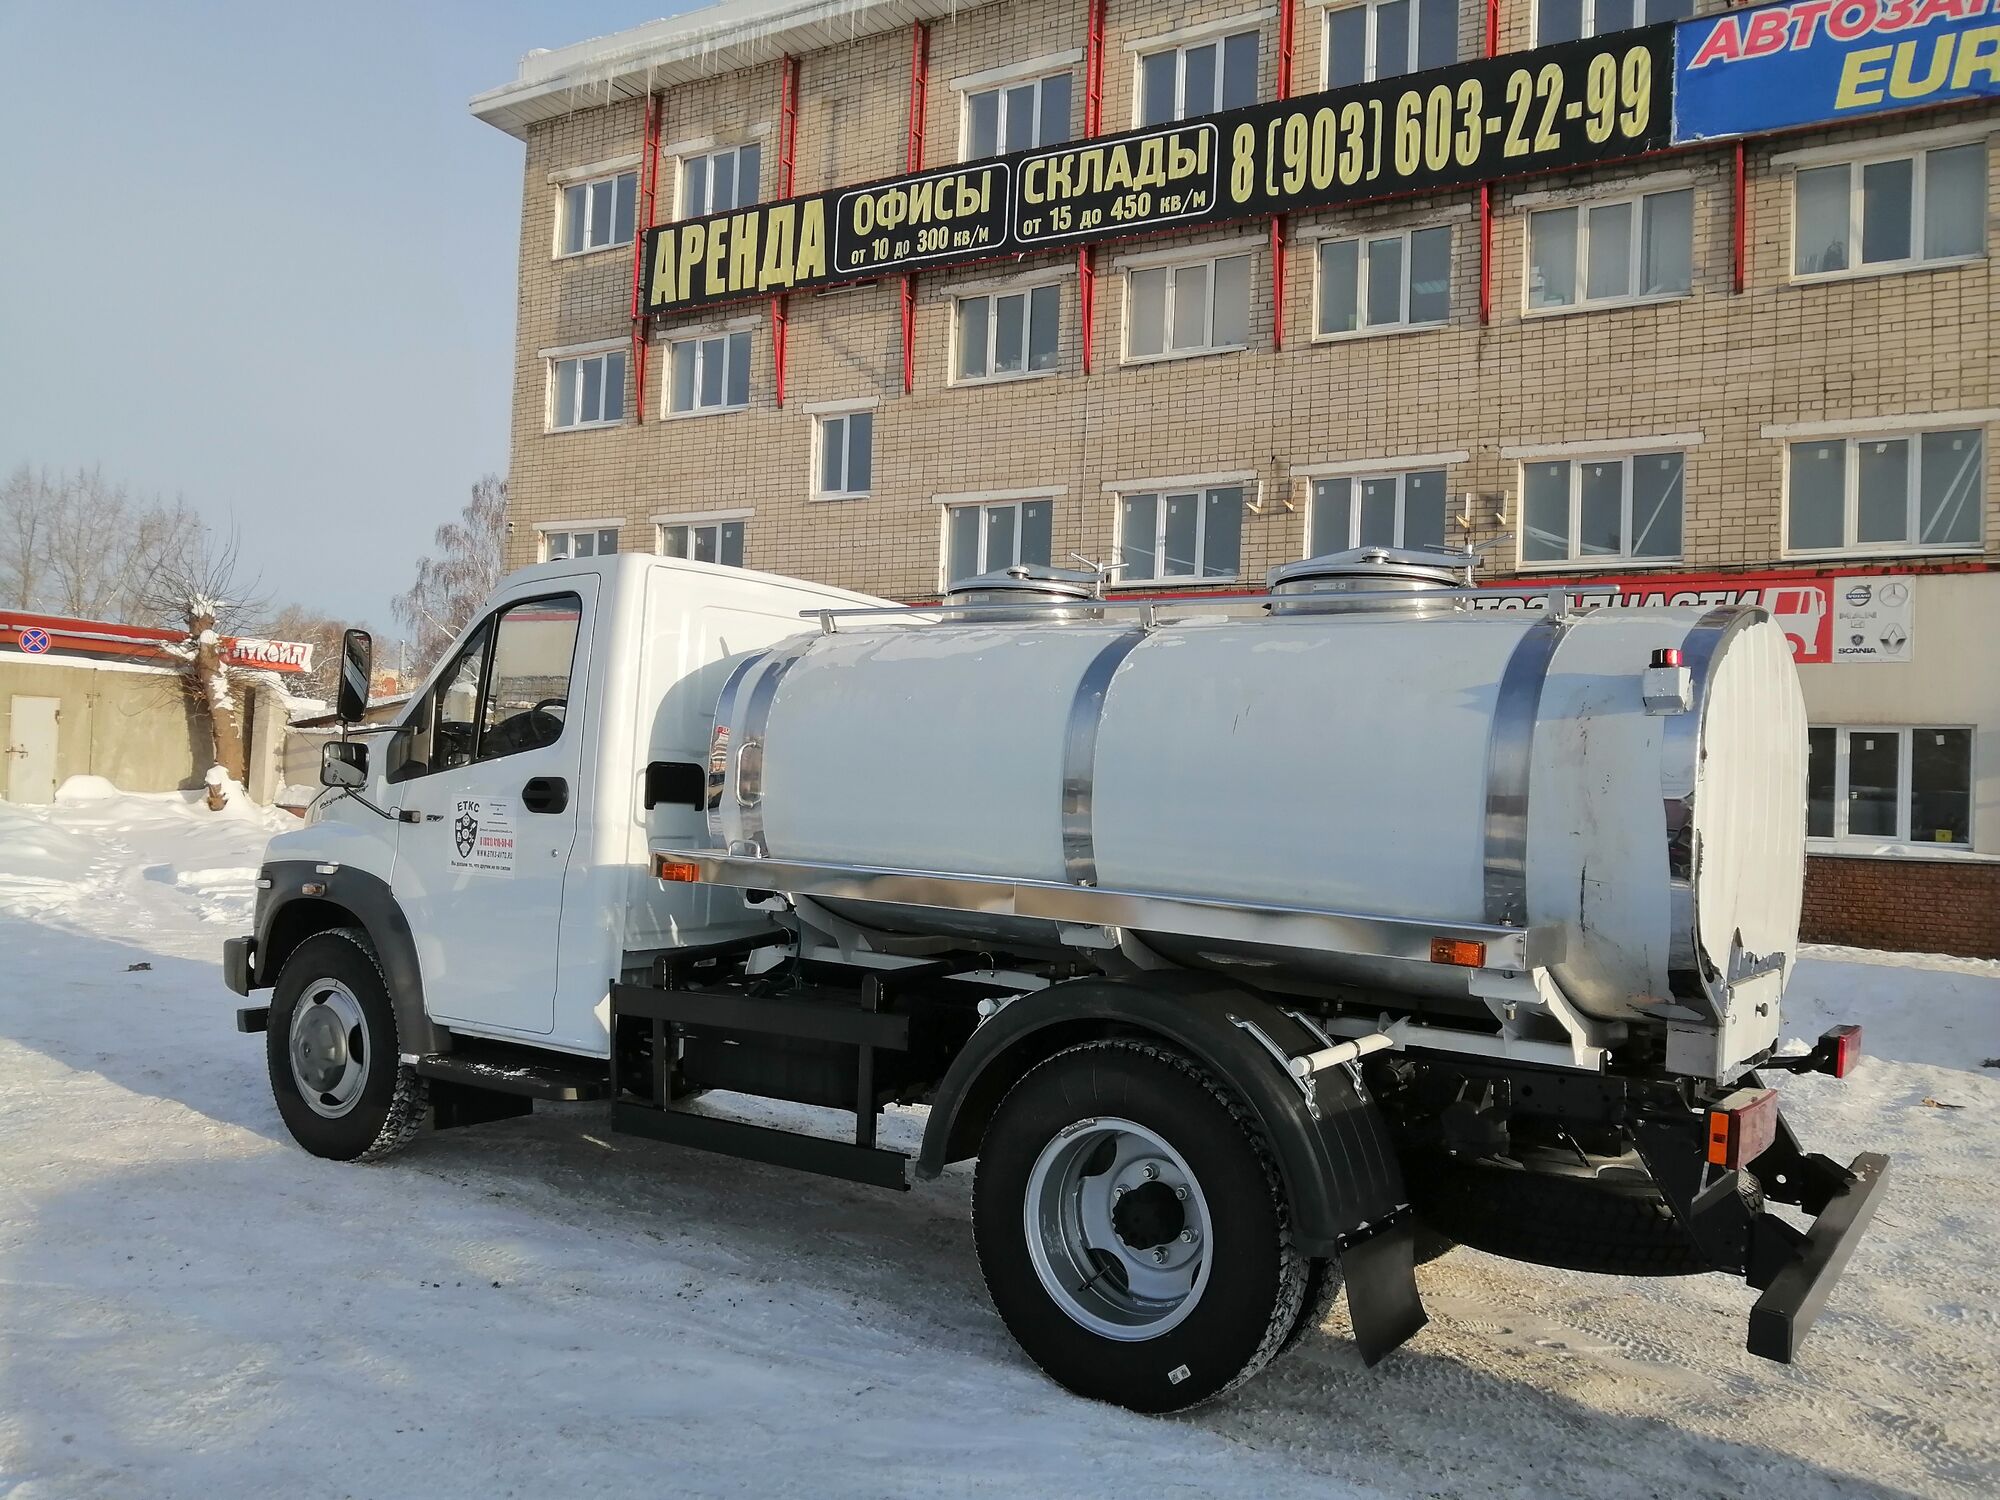 Автоцистерна молоковоз на базе ГАЗ новая